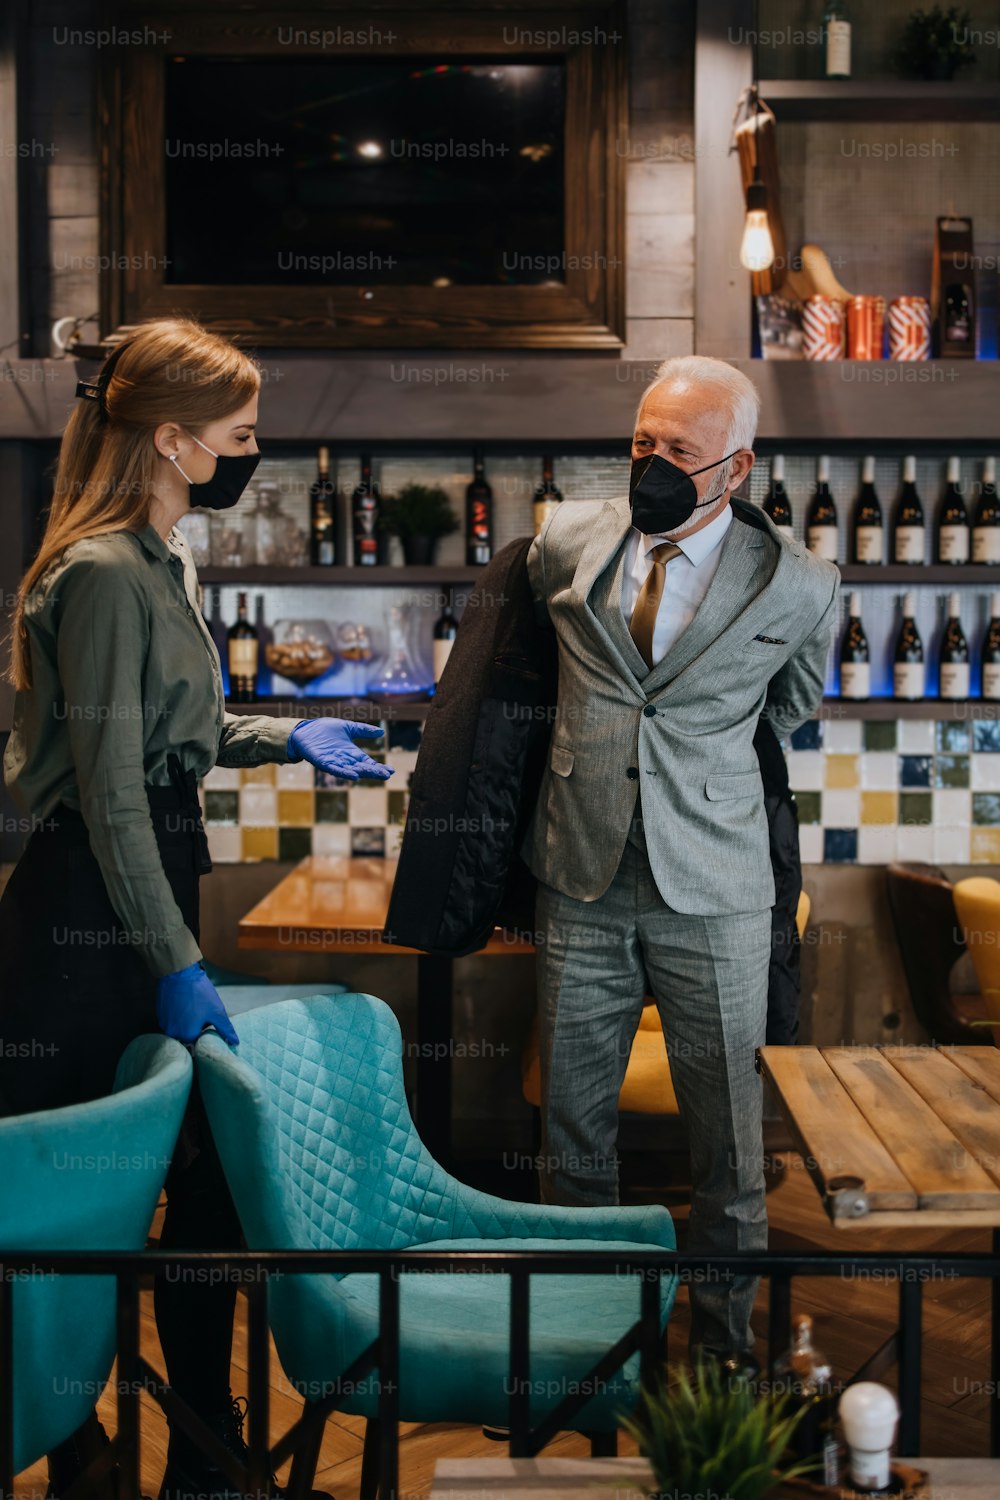 Homme d’affaires senior confiant debout dans un restaurant exclusif. Il enlève son manteau pendant que la serveuse l’aide. Ils portent tous deux des masques de protection contre l’infection virale.